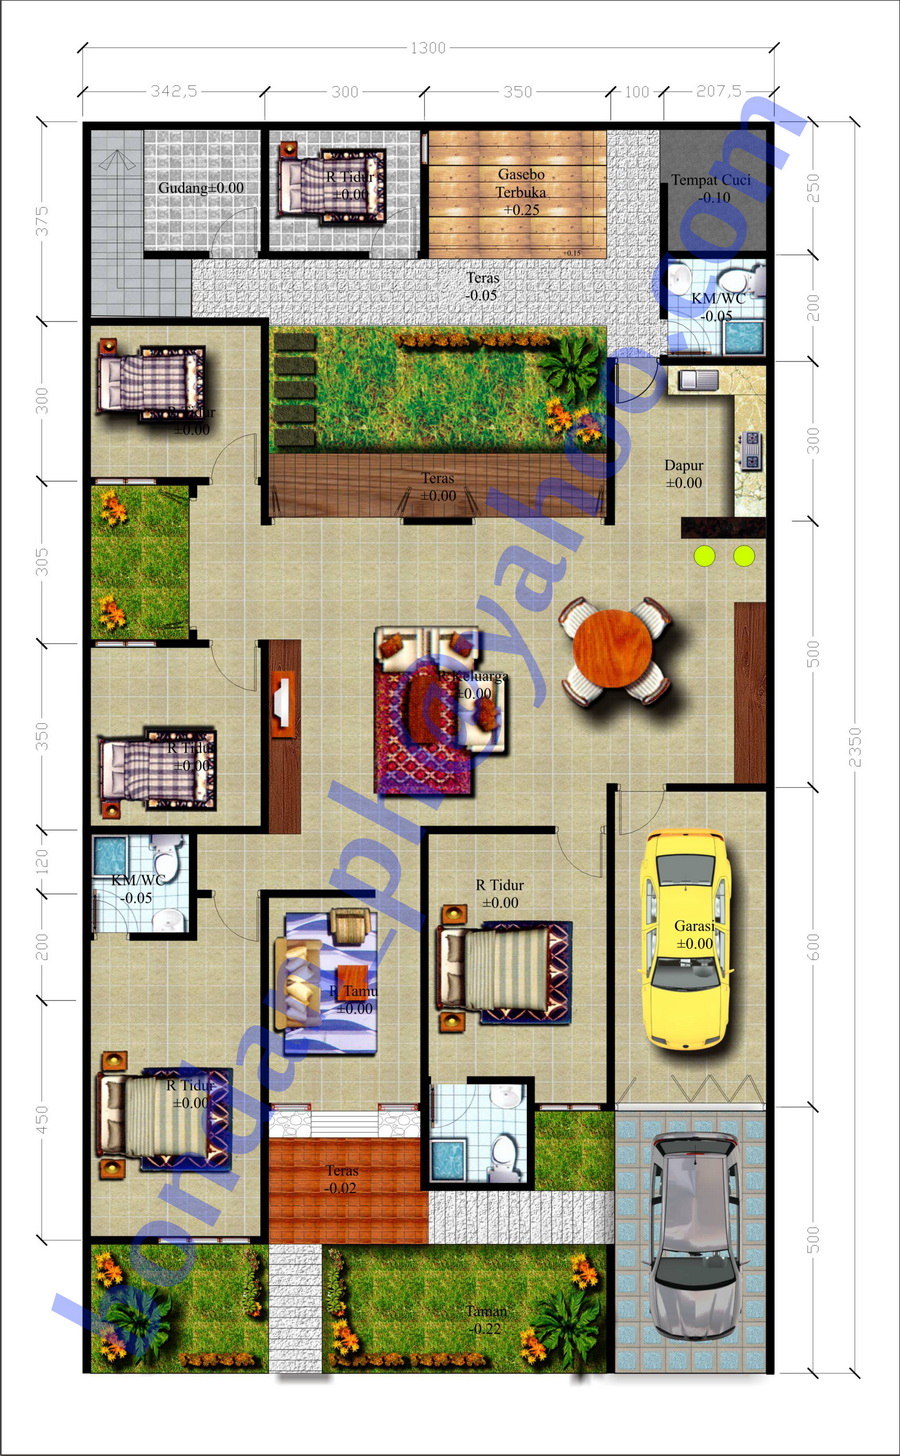 Home » Rumah Minimalis » Desain Rumah Minimalis Dan Estimasi Biaya